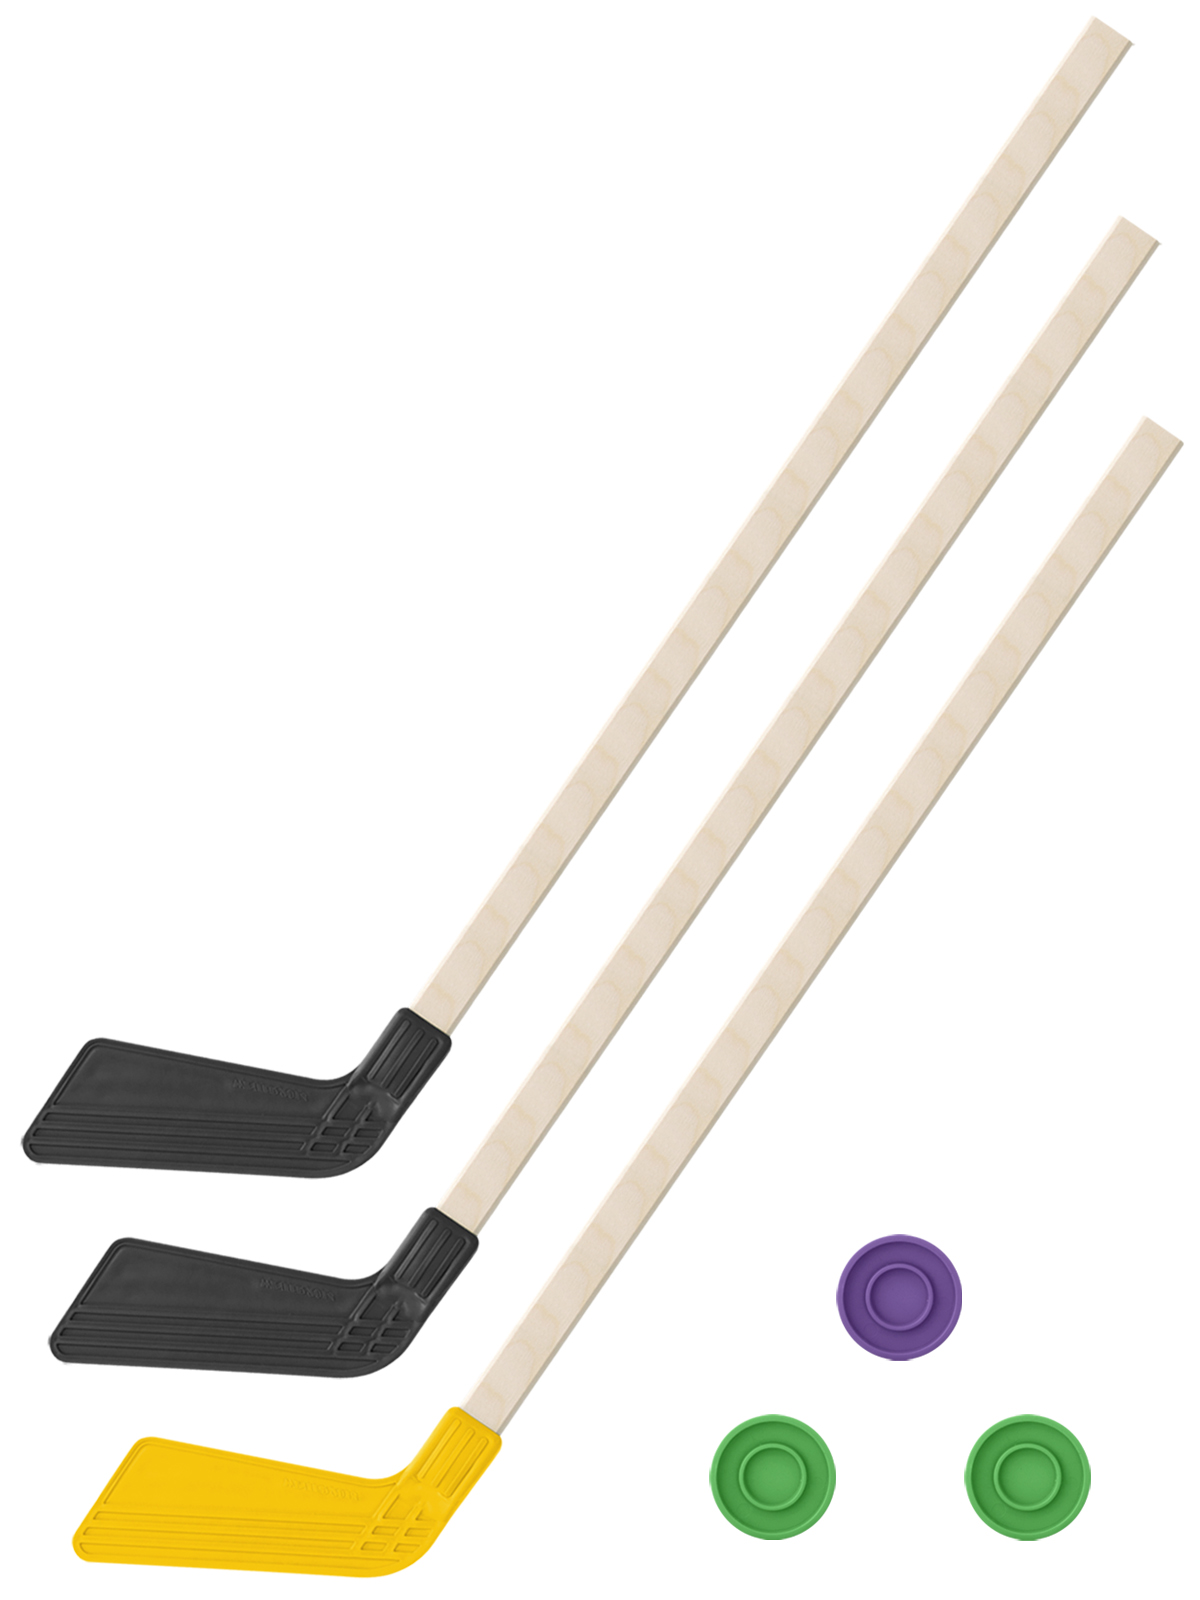 Детский хоккейный набор Задира-плюс 3 в 1 Клюшка хоккейная 80 см (2черн, 1жел) + 3 шайбы